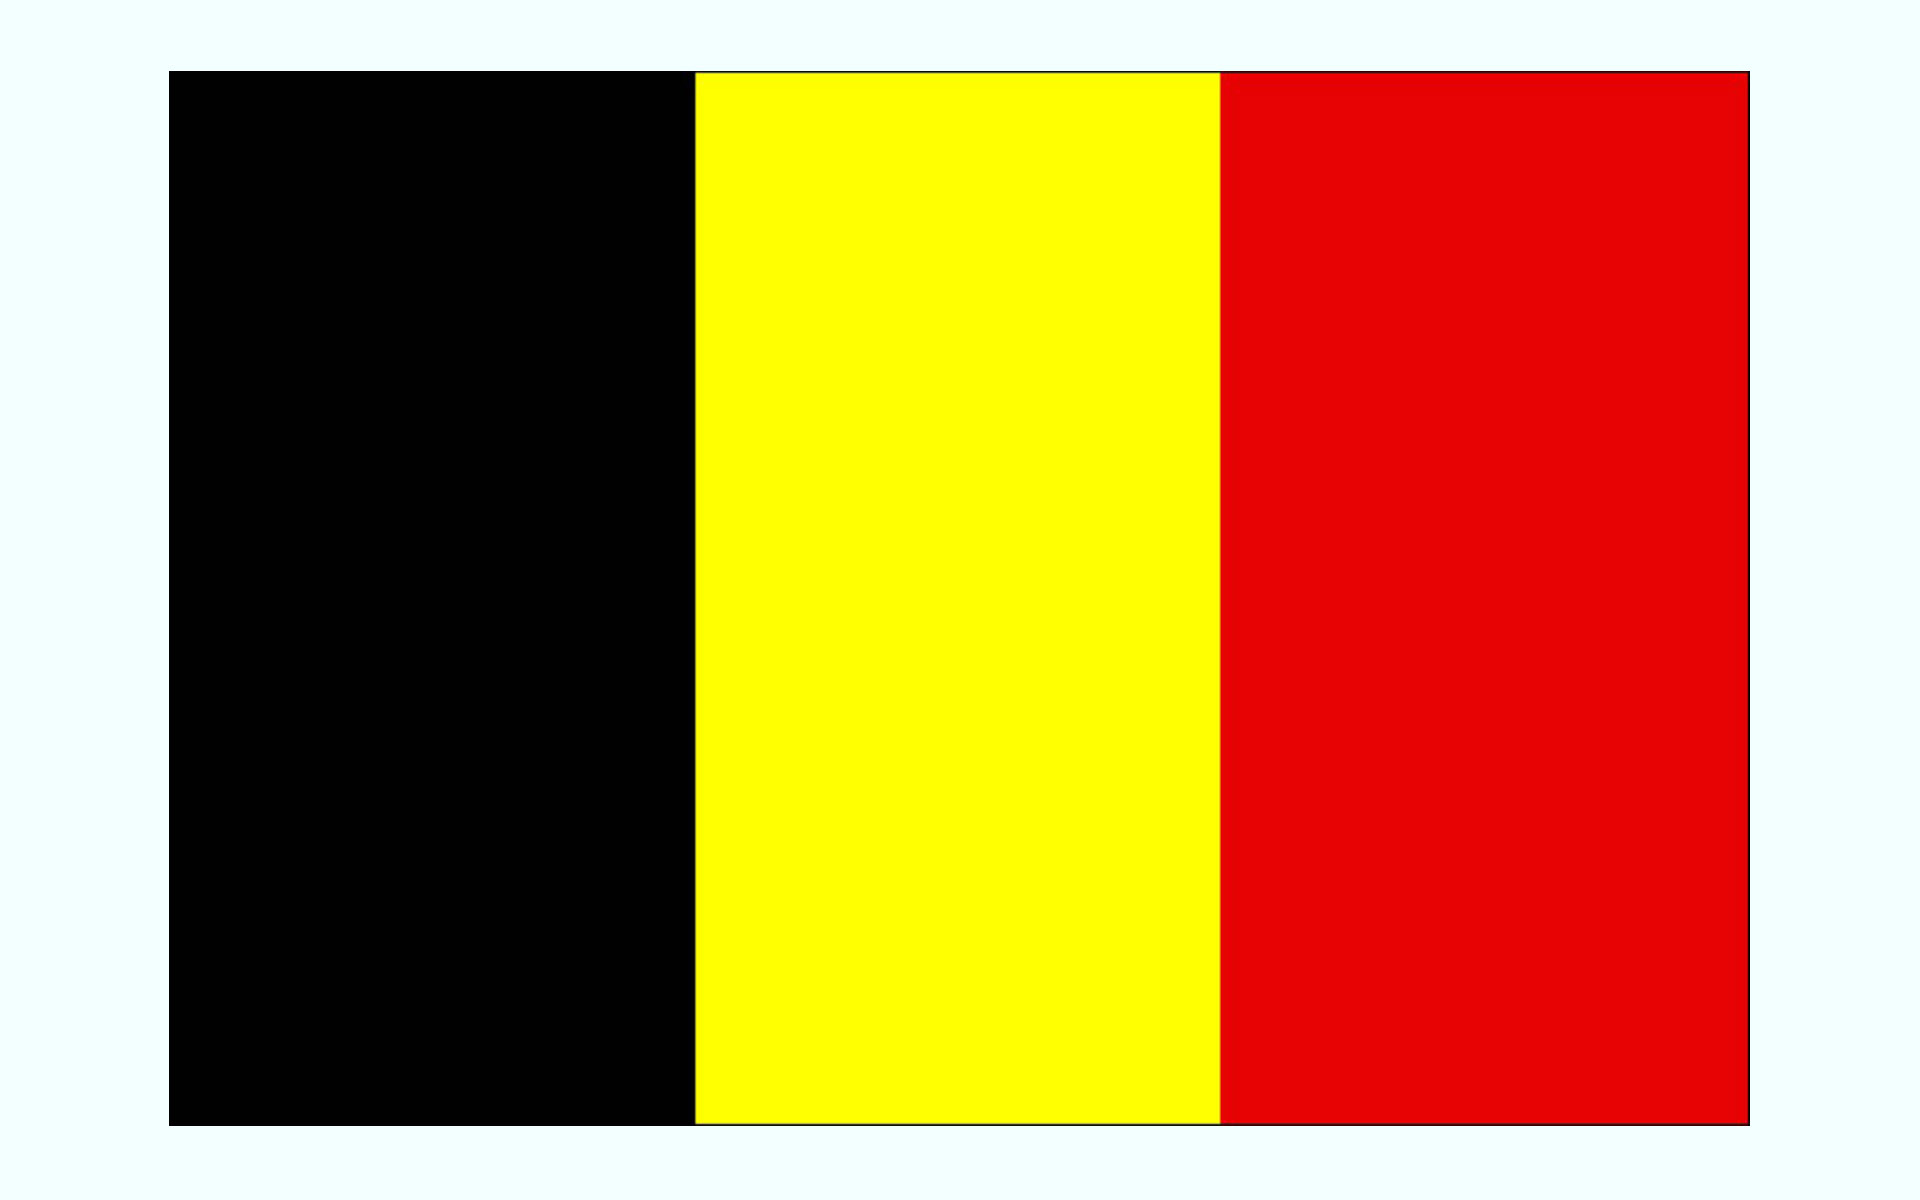 عکس پرچم کشور بلژیک
